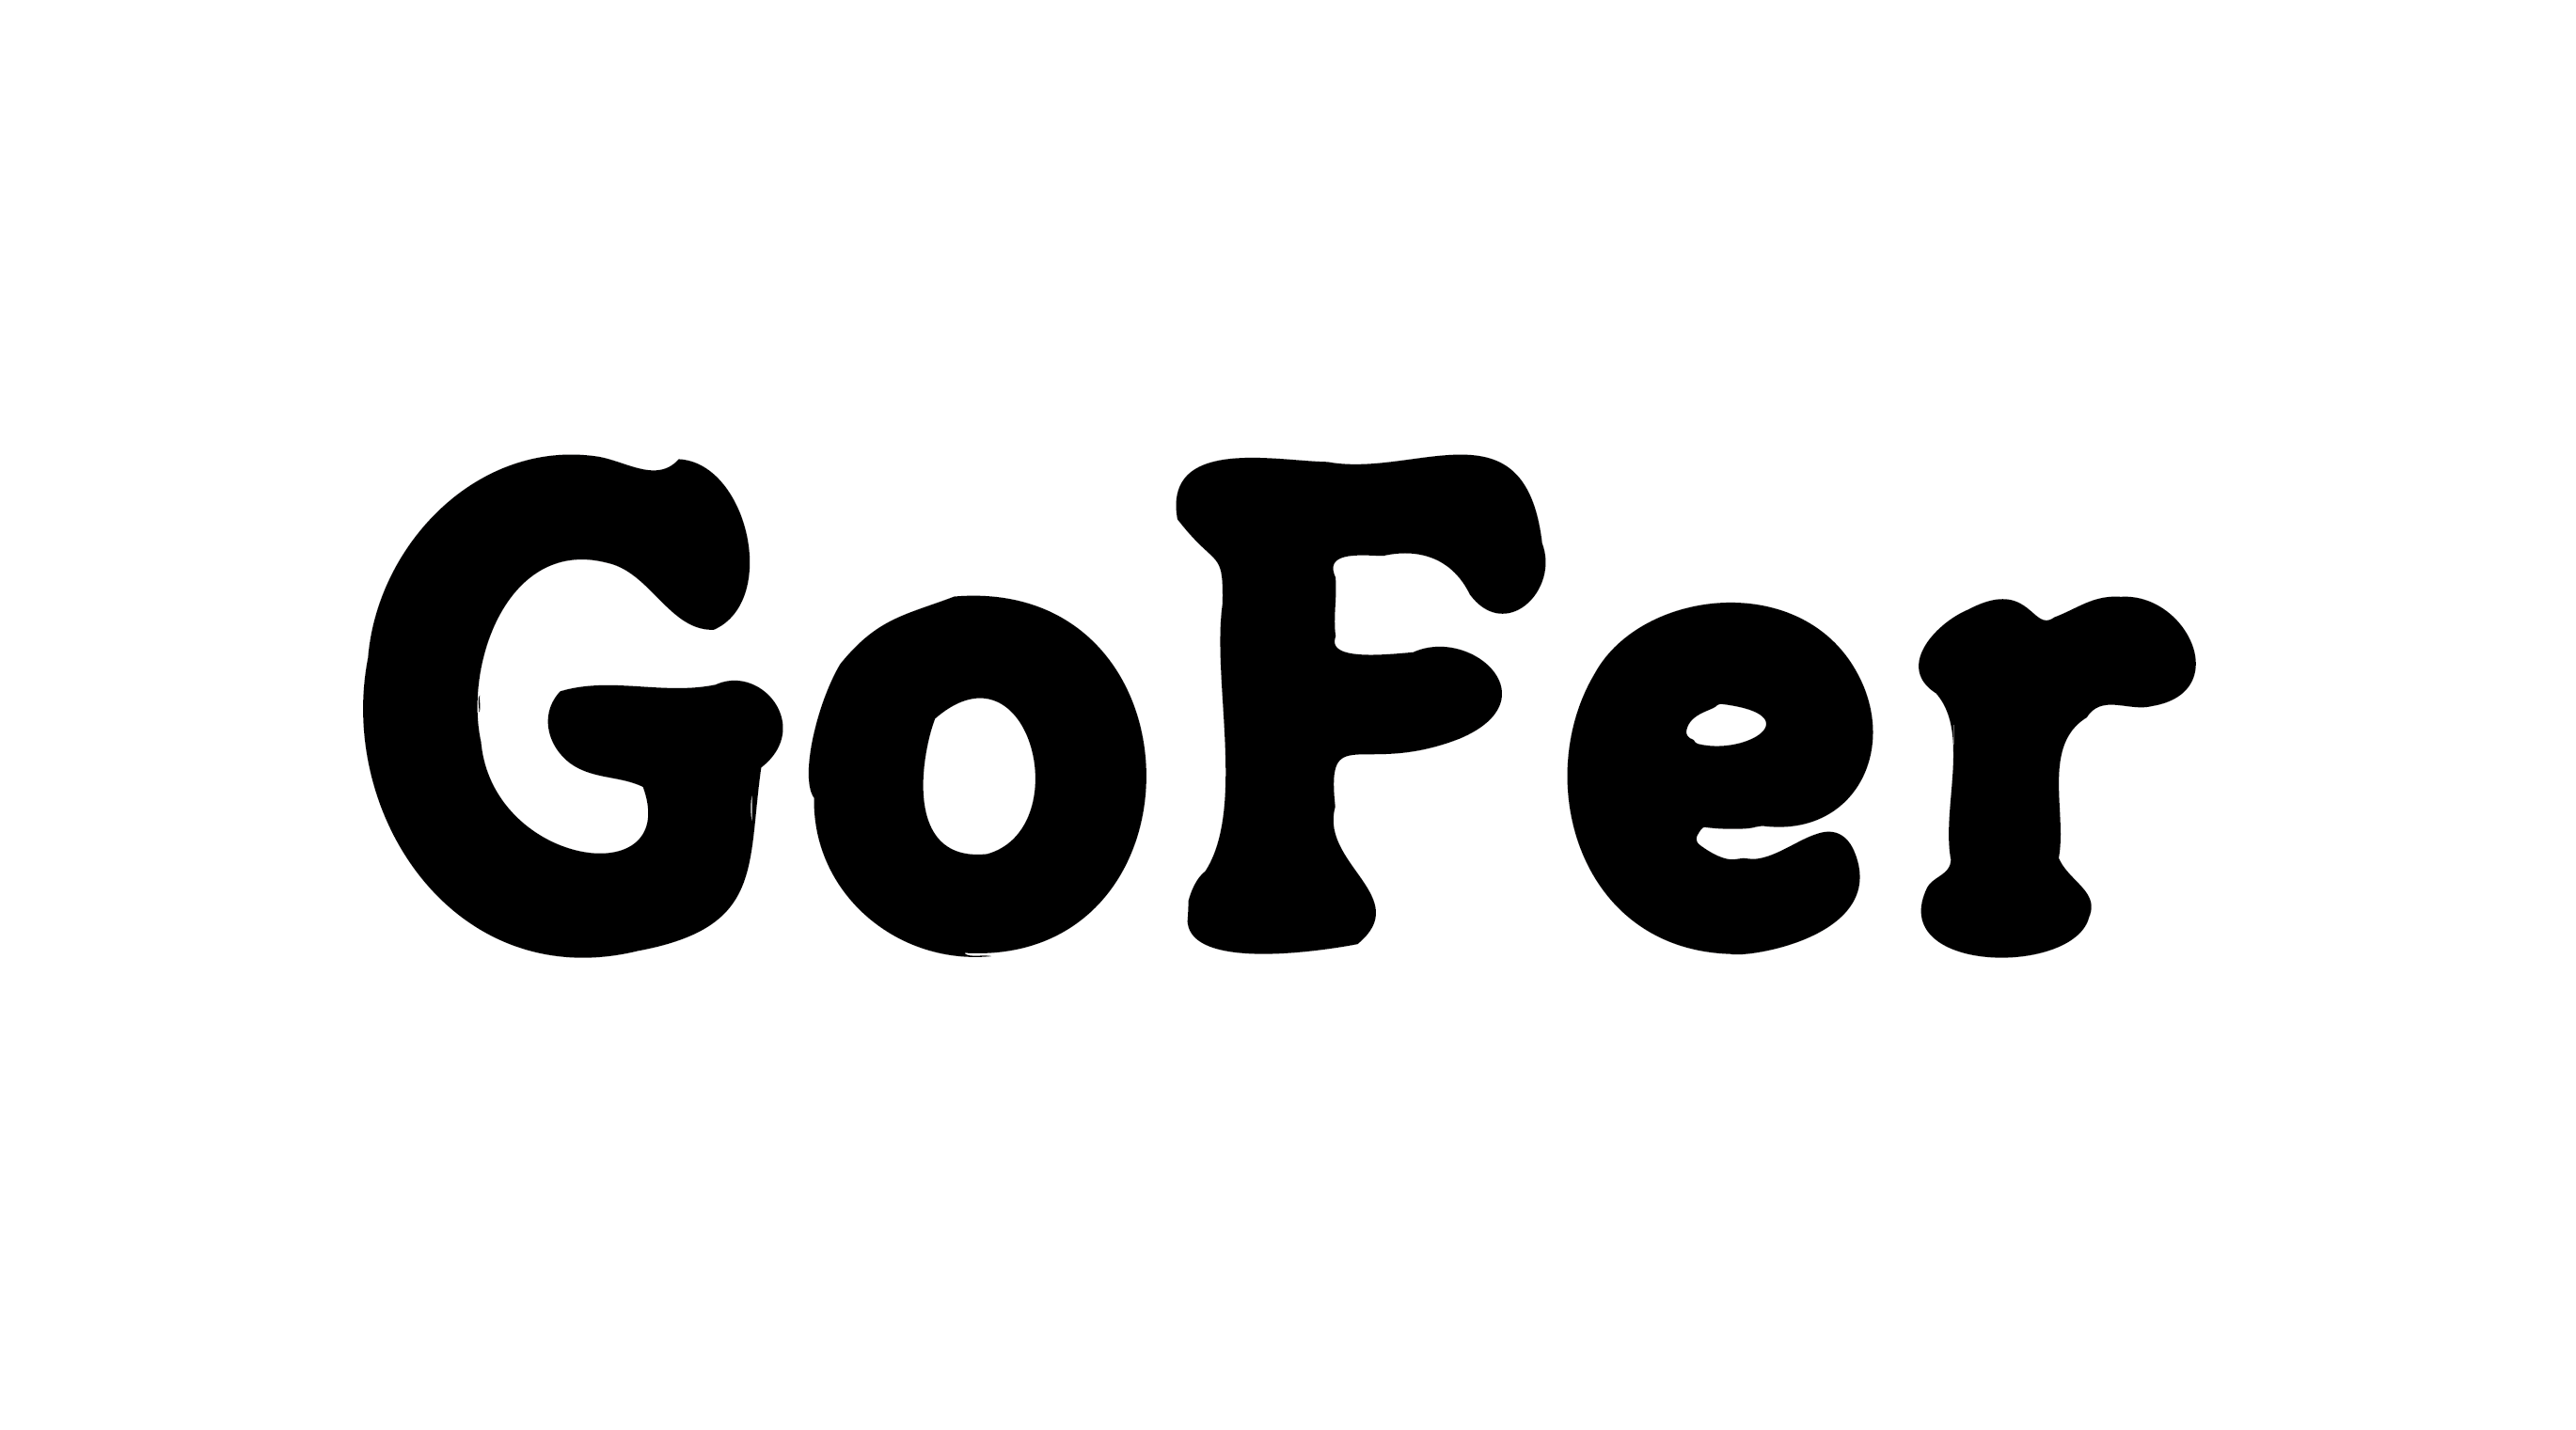 gofer